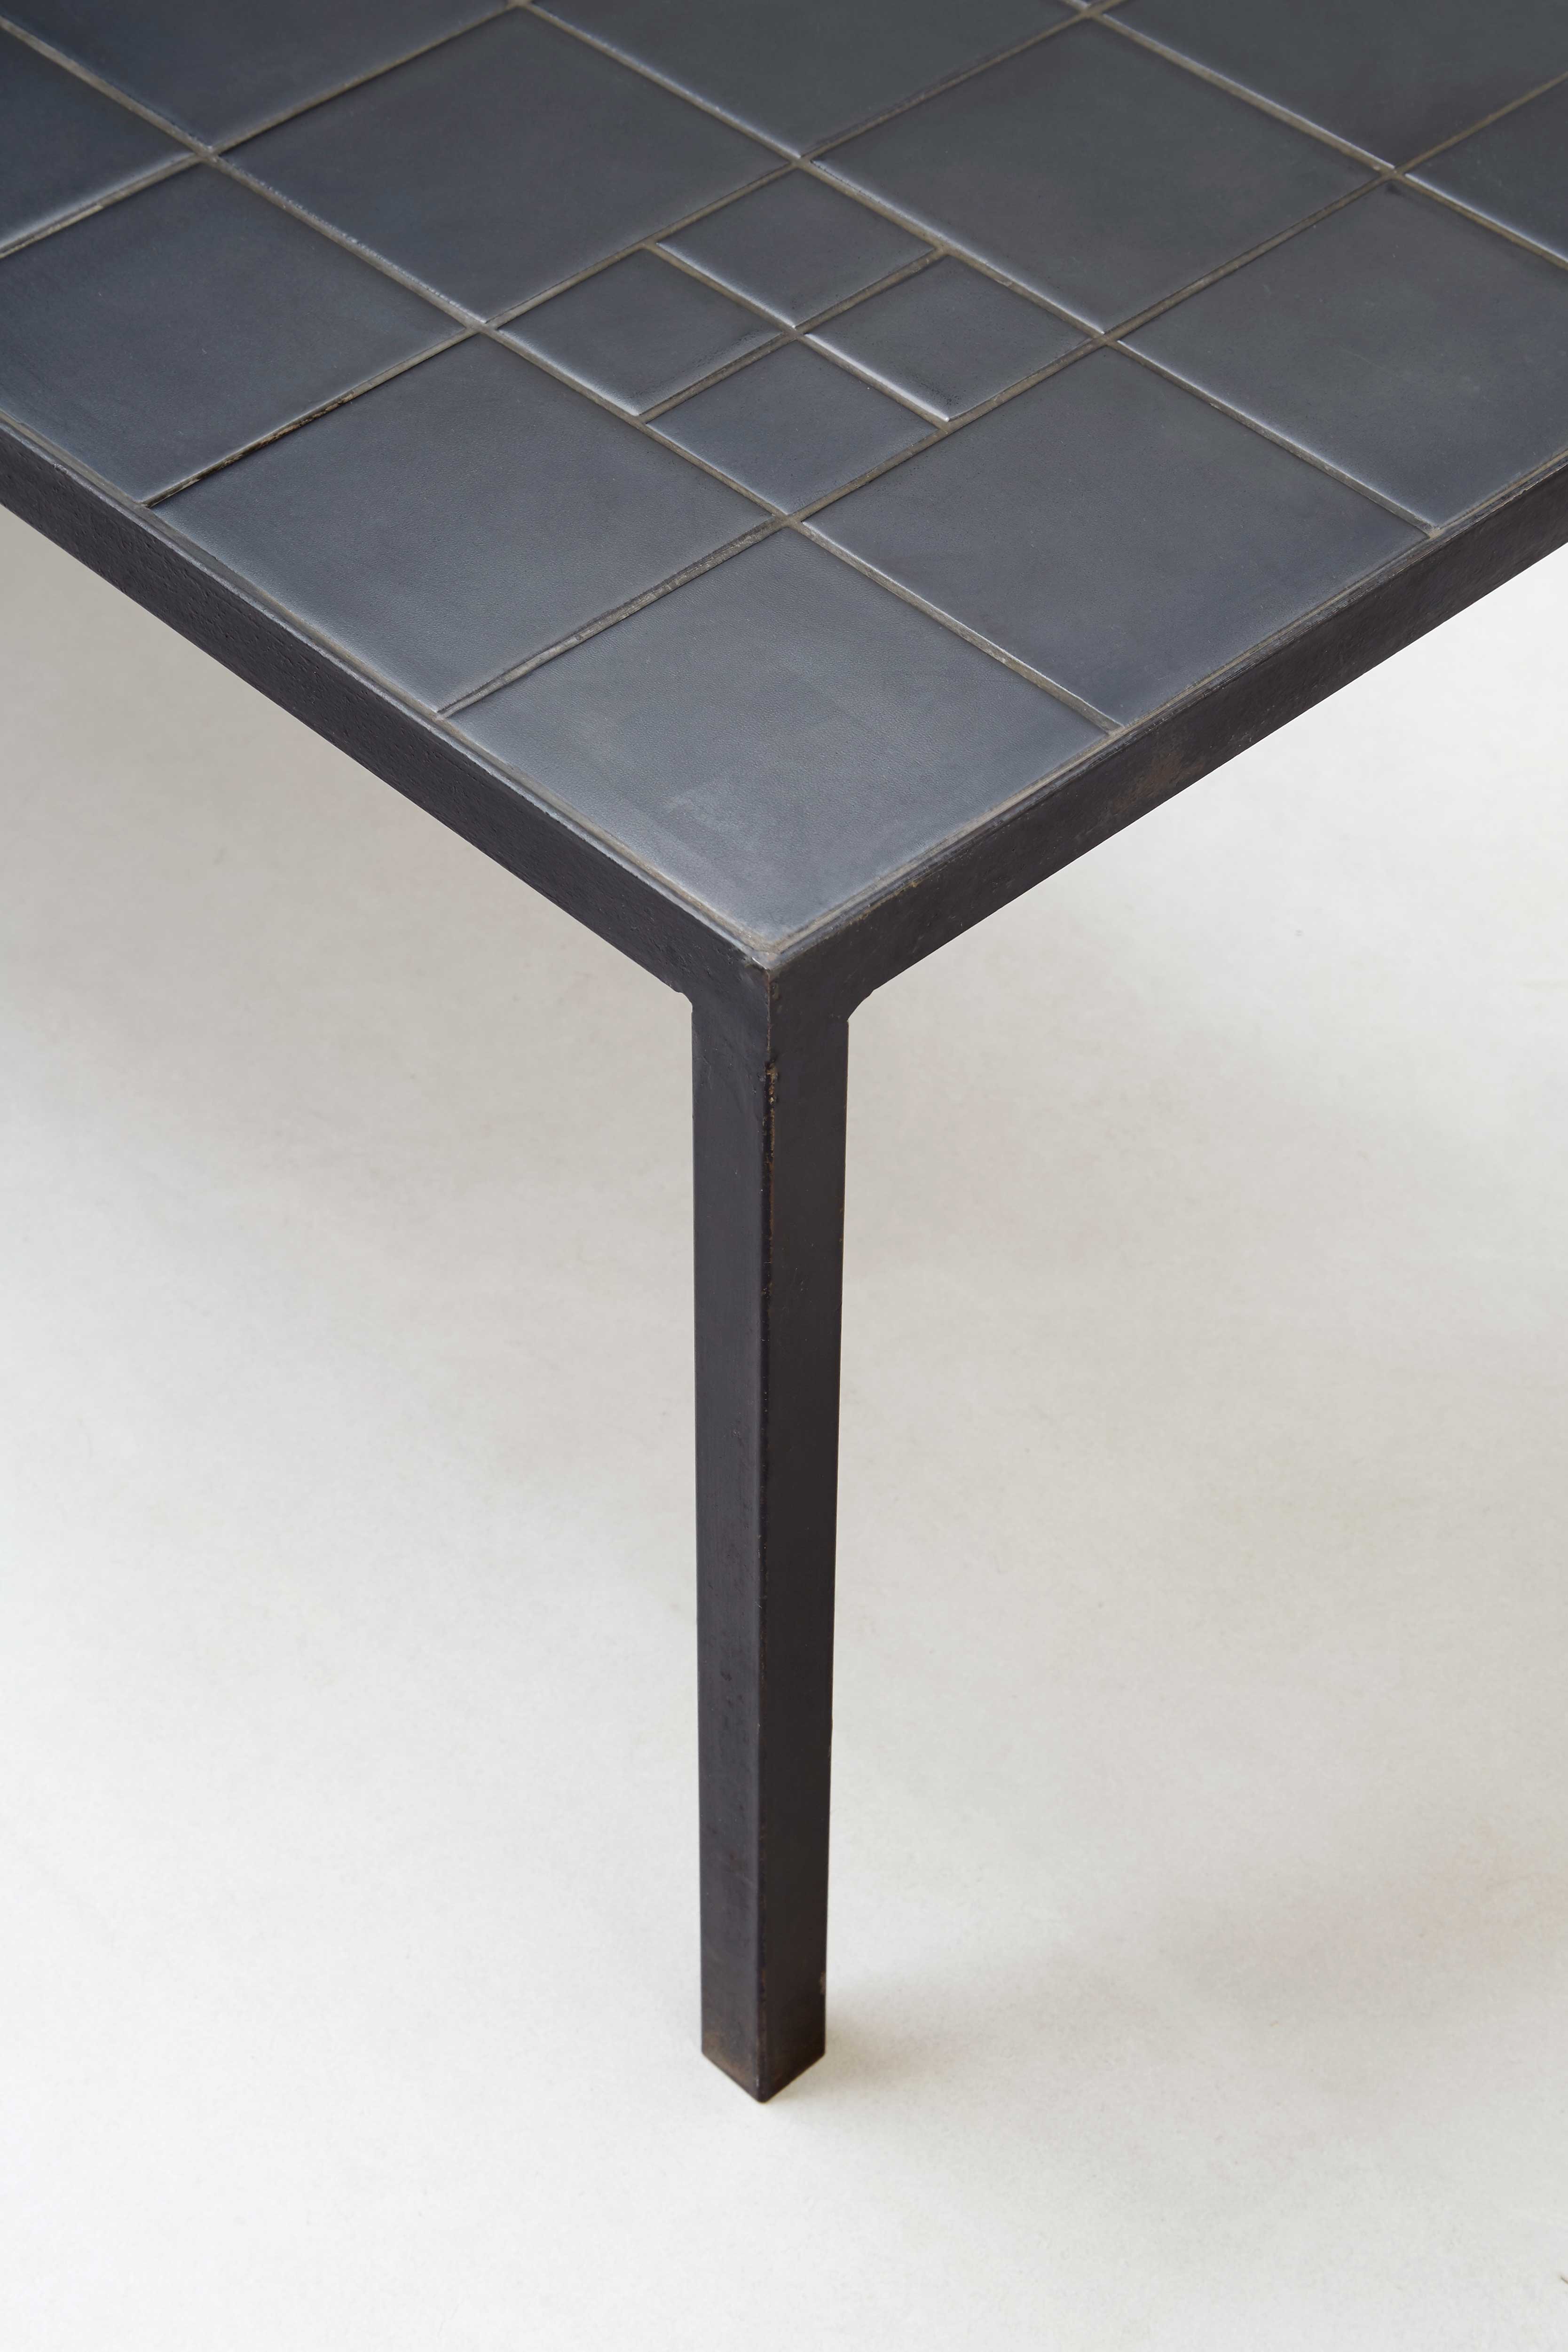 Georges Jouve, Table basse en céramique noire, vue 01